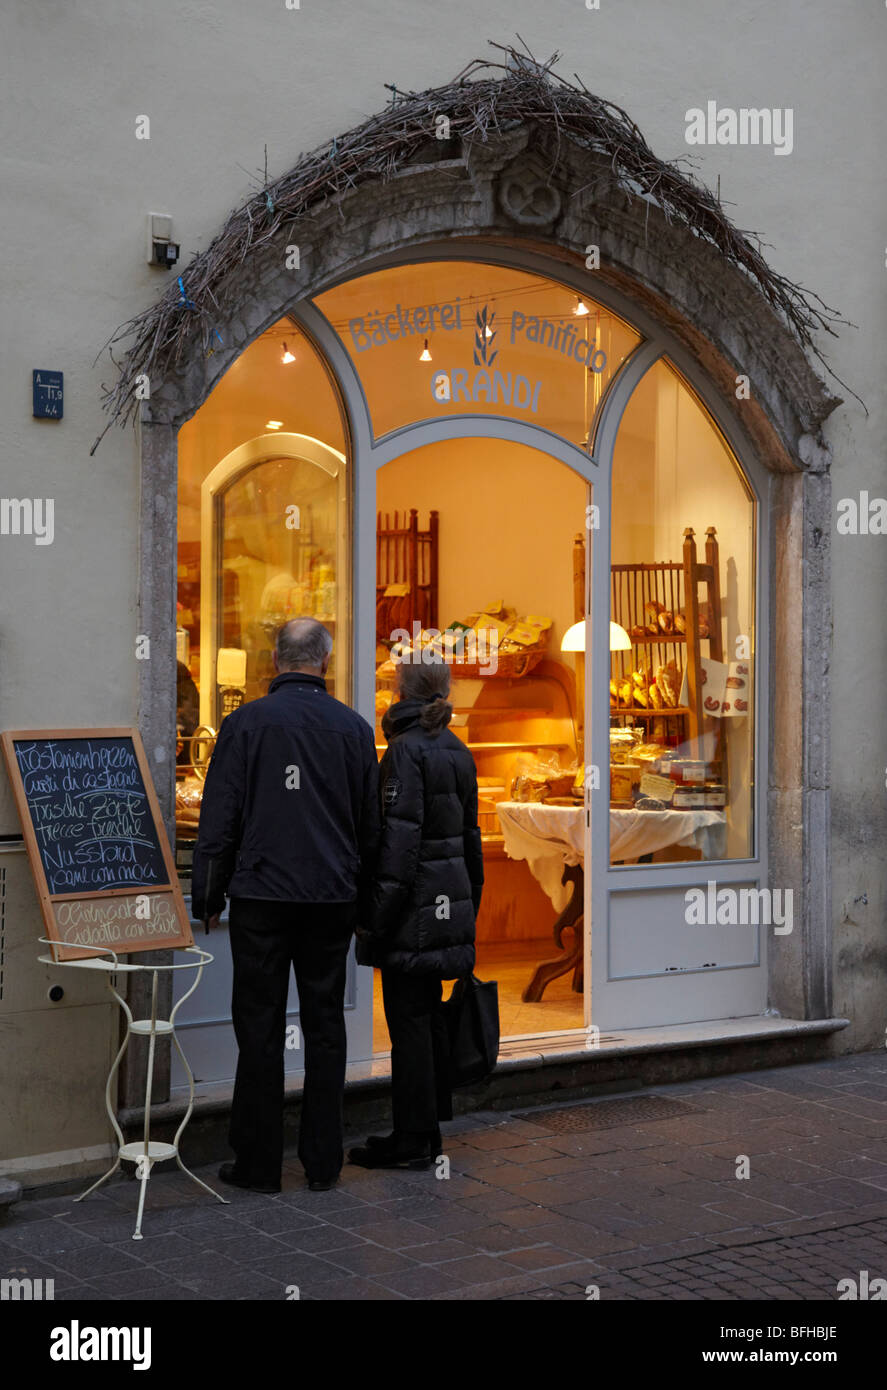 Bakery in the historical centre of Bolzano, Alto Adige, Italy. Stock Photo